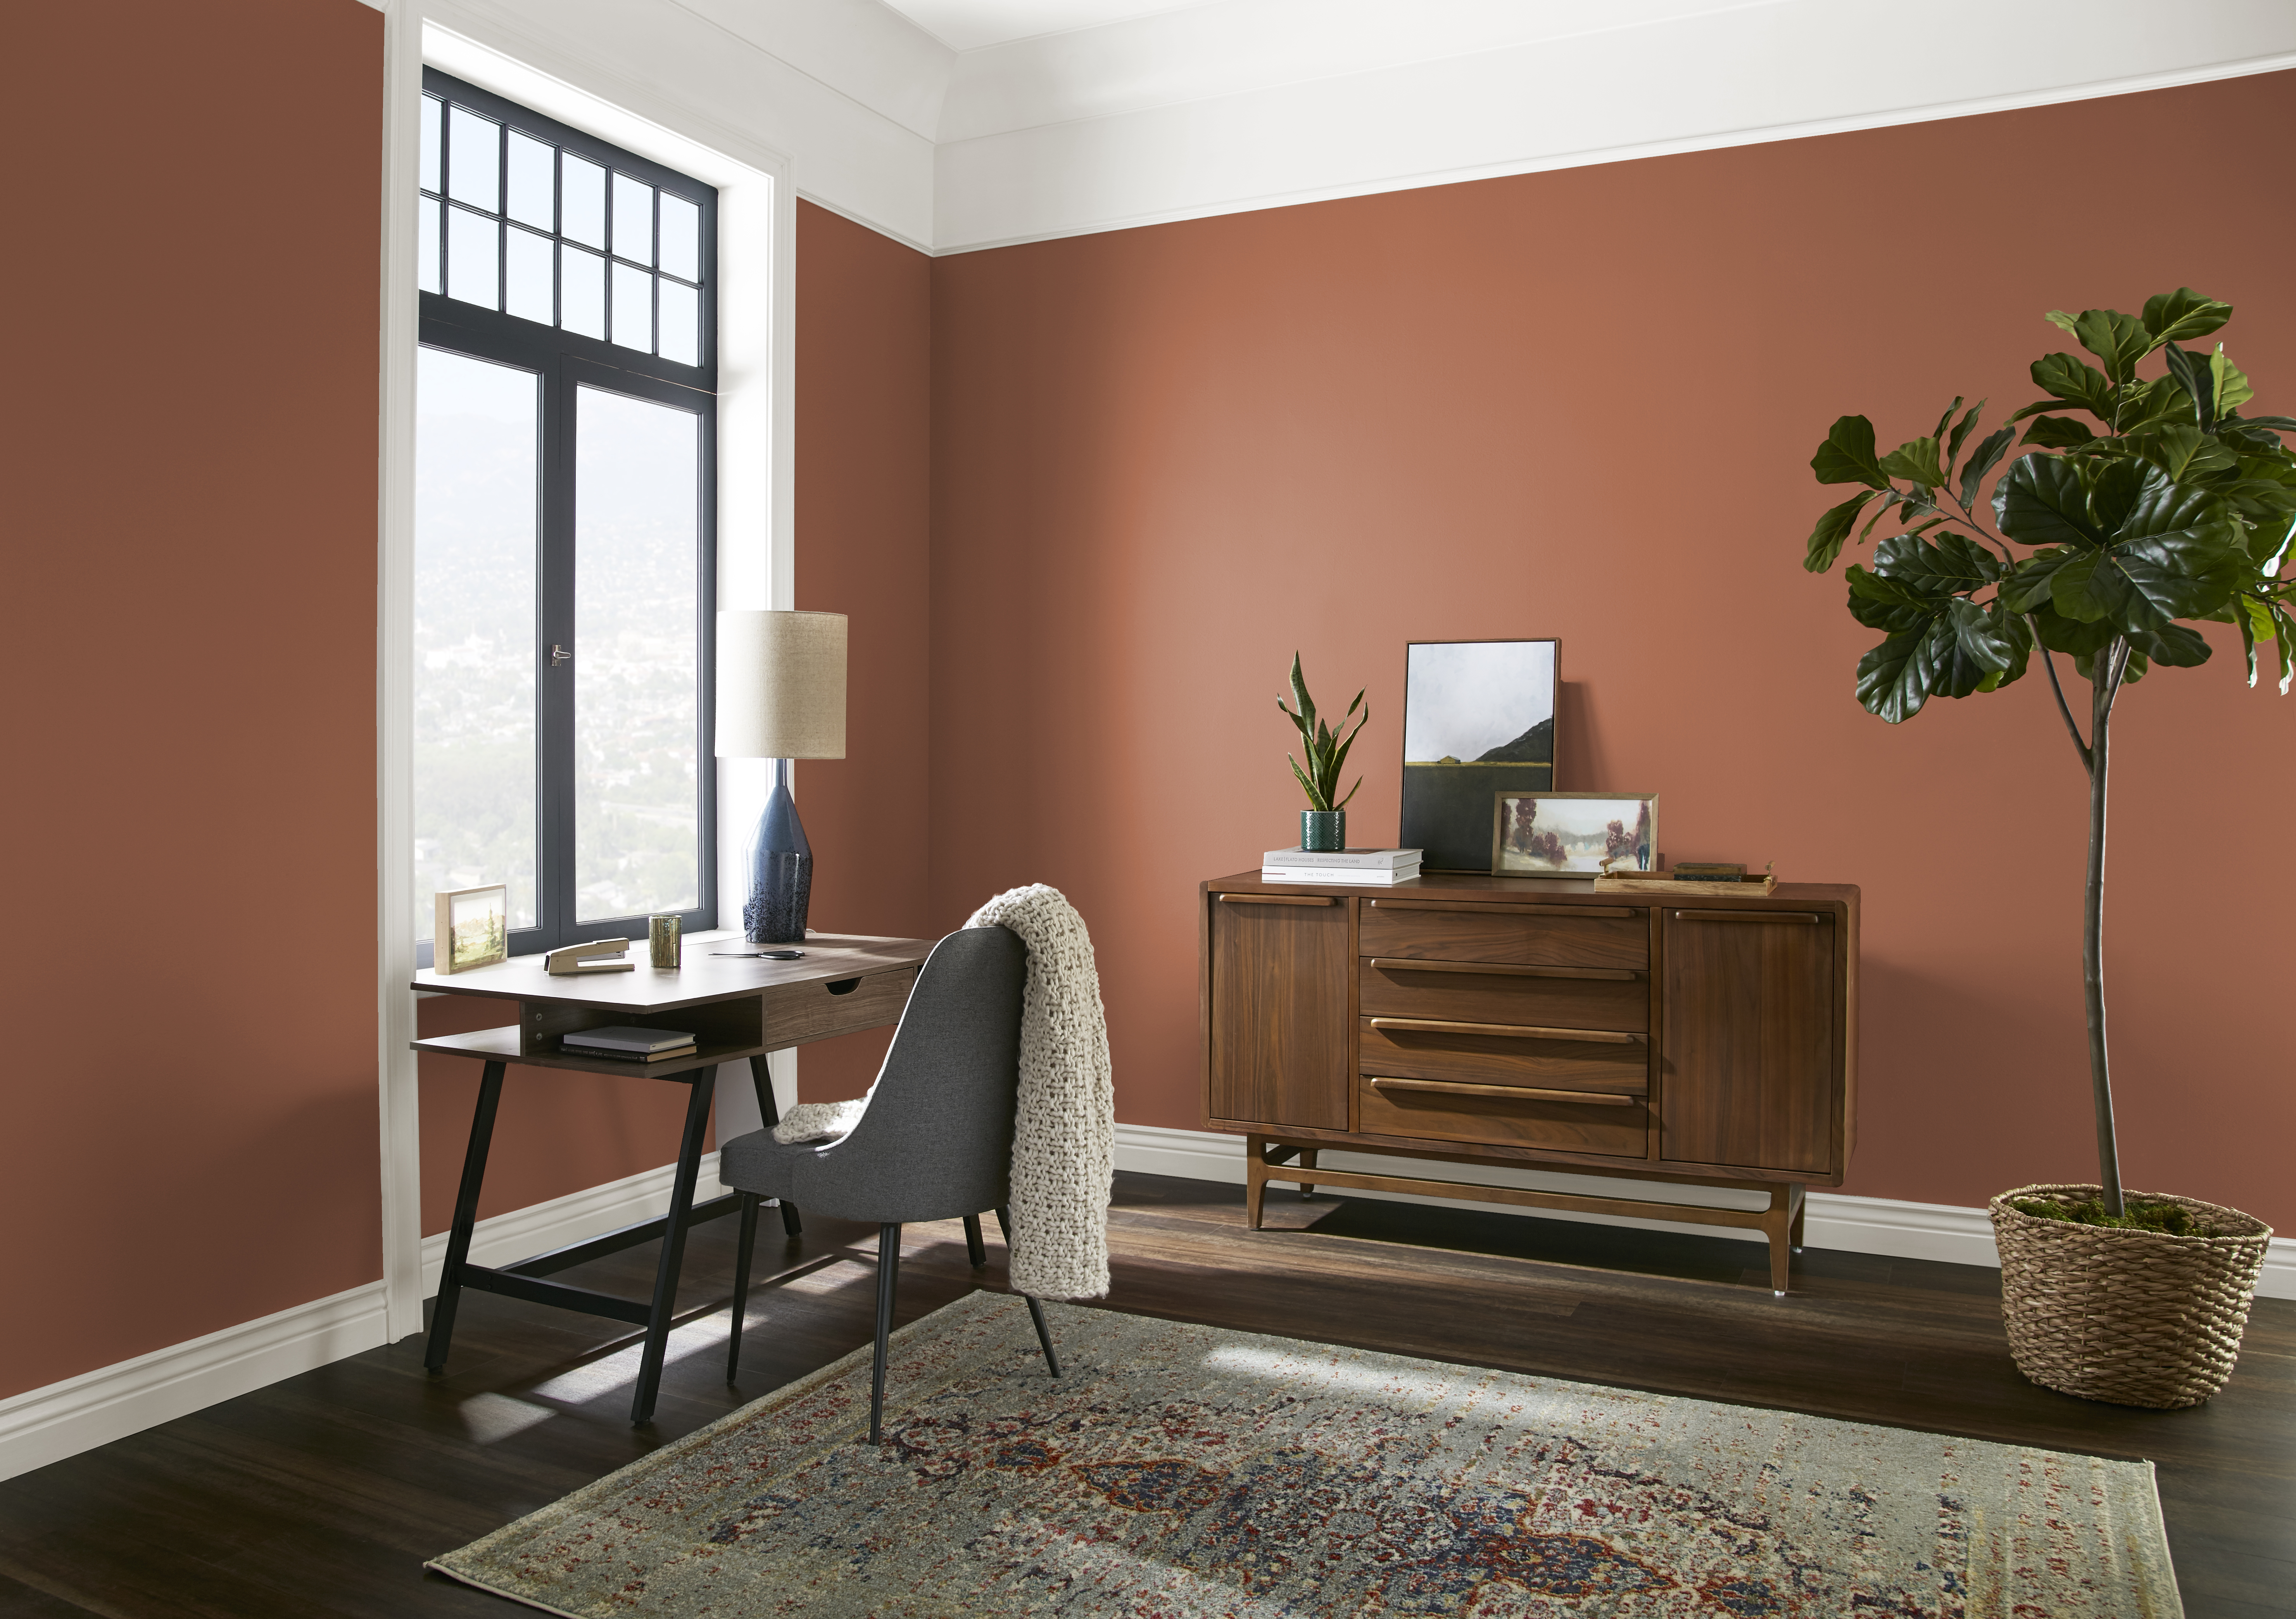 Une pièce aux murs peints en Flambé à l’orange décorée avec des meubles neutres de style années 50 